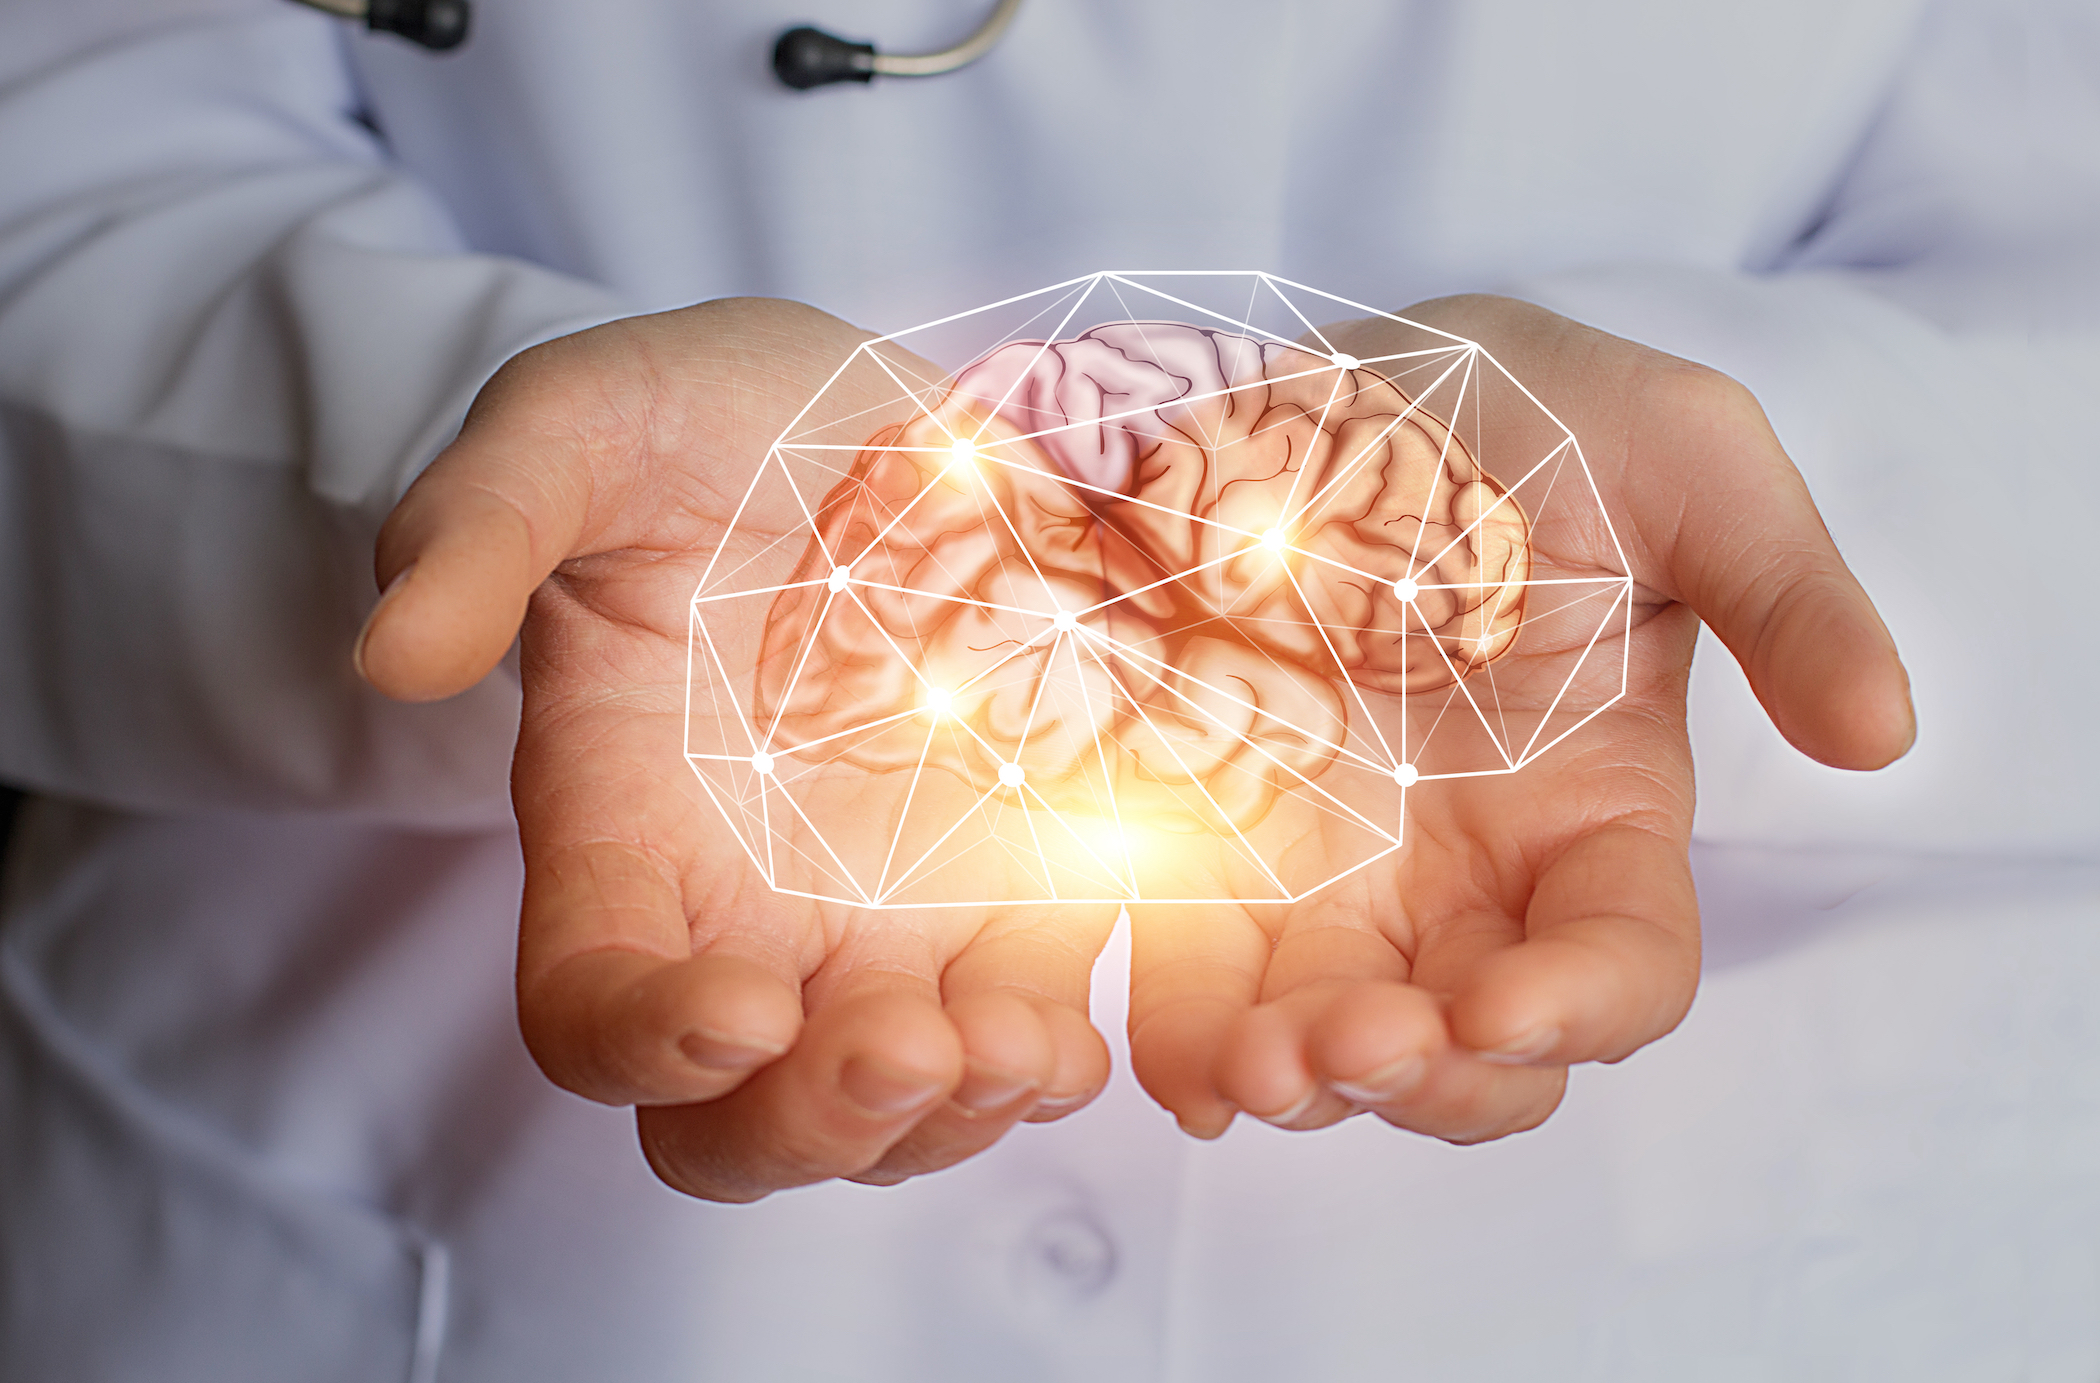 Siêu máy điện toán ‘đầu tiên trên thế giới’ mô phỏng não người đang được chế tạo ở Sydney